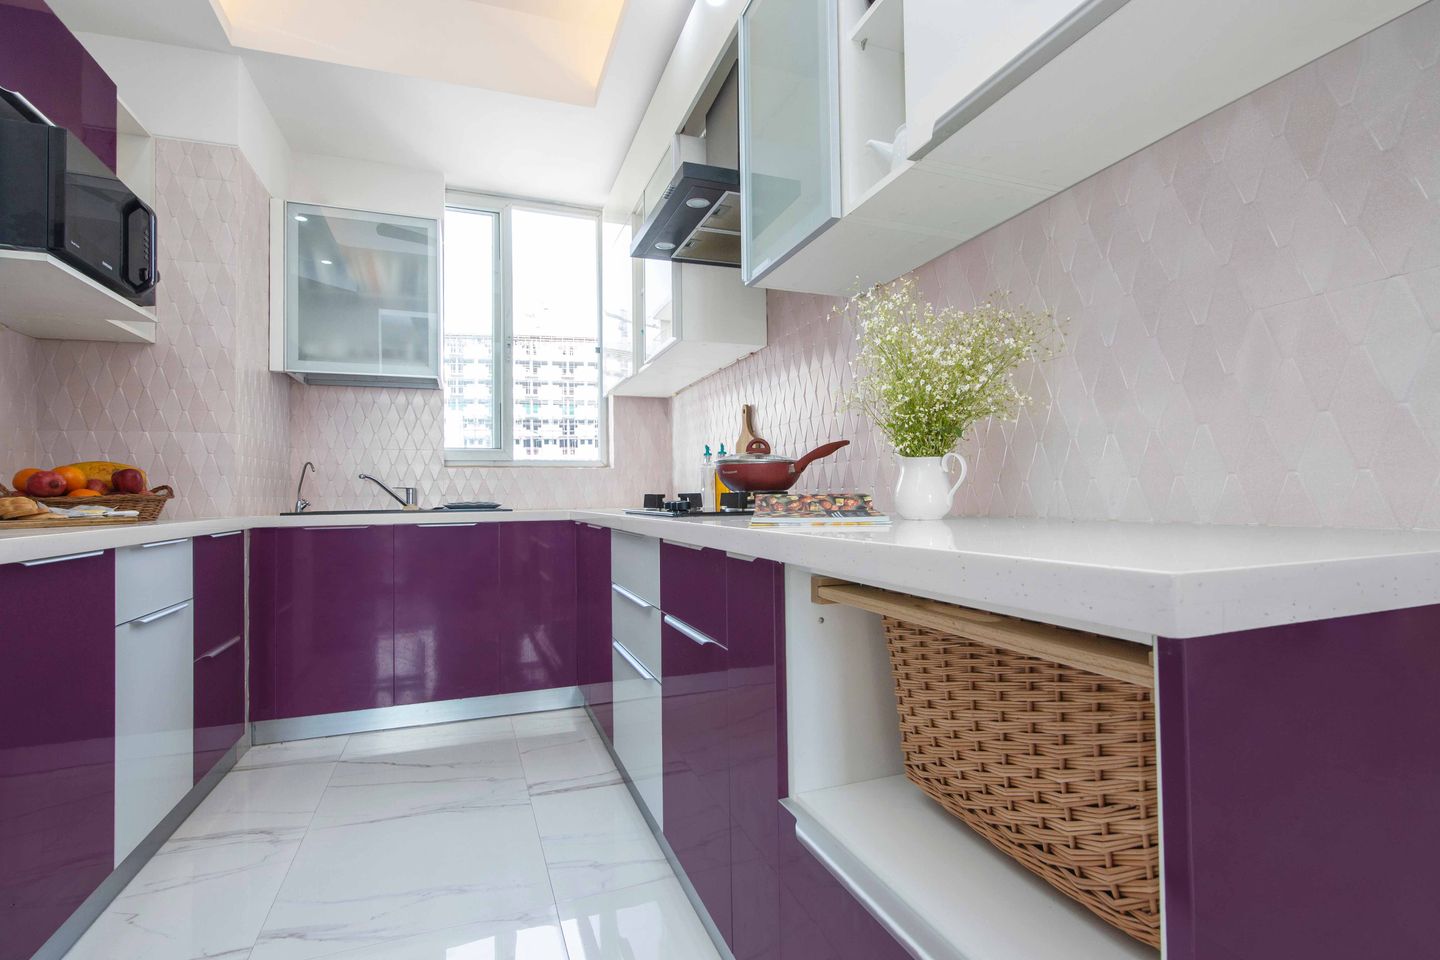 Modular U Shaped Violet And White Kitchen Design - Livspace